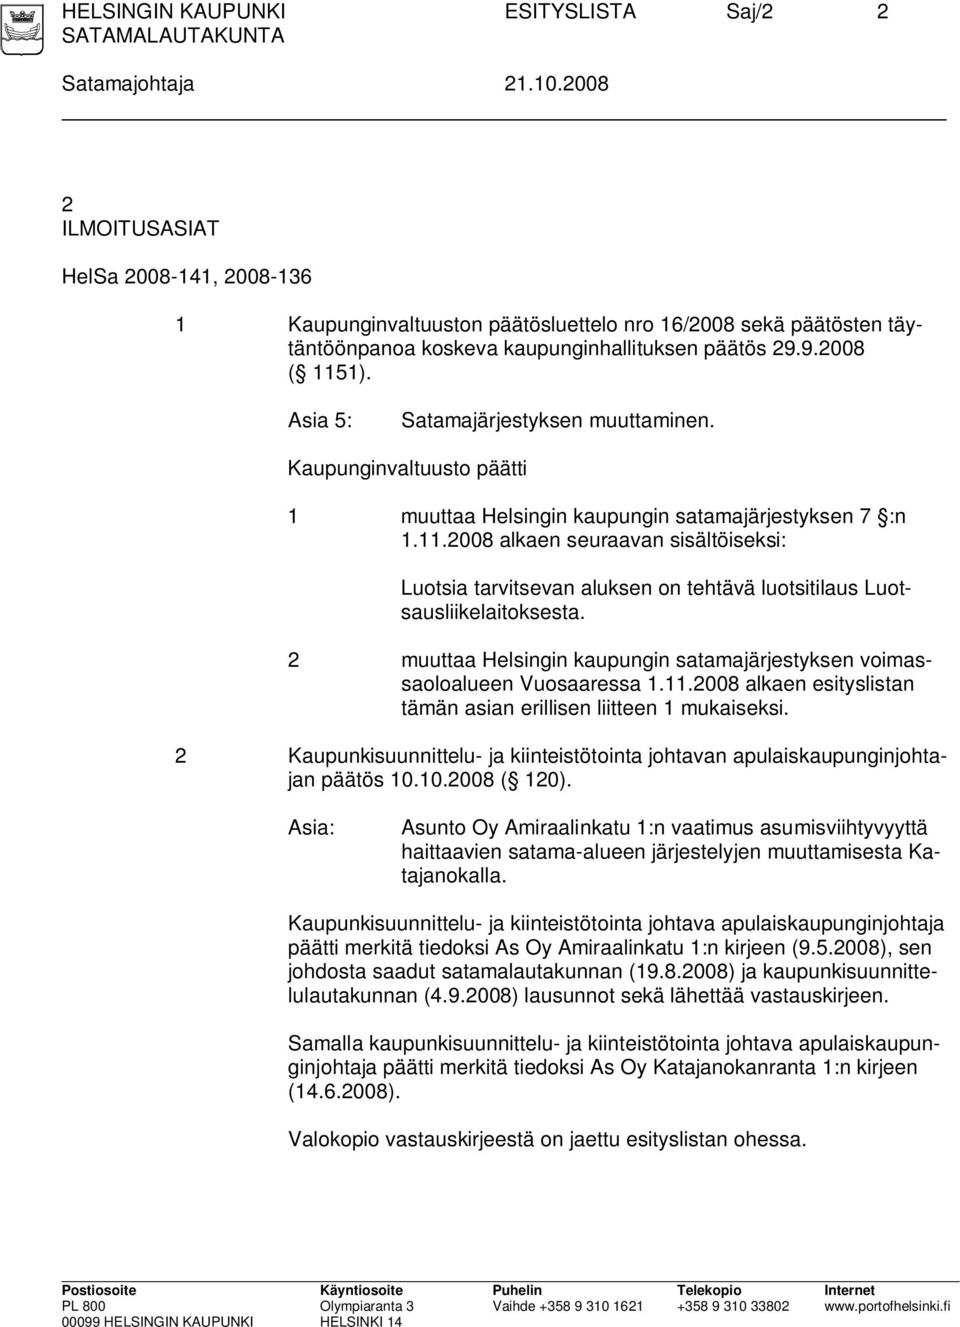 Asia 5: Satamajärjestyksen muuttaminen. Kaupunginvaltuusto päätti 1 muuttaa Helsingin kaupungin satamajärjestyksen 7 :n 1.11.